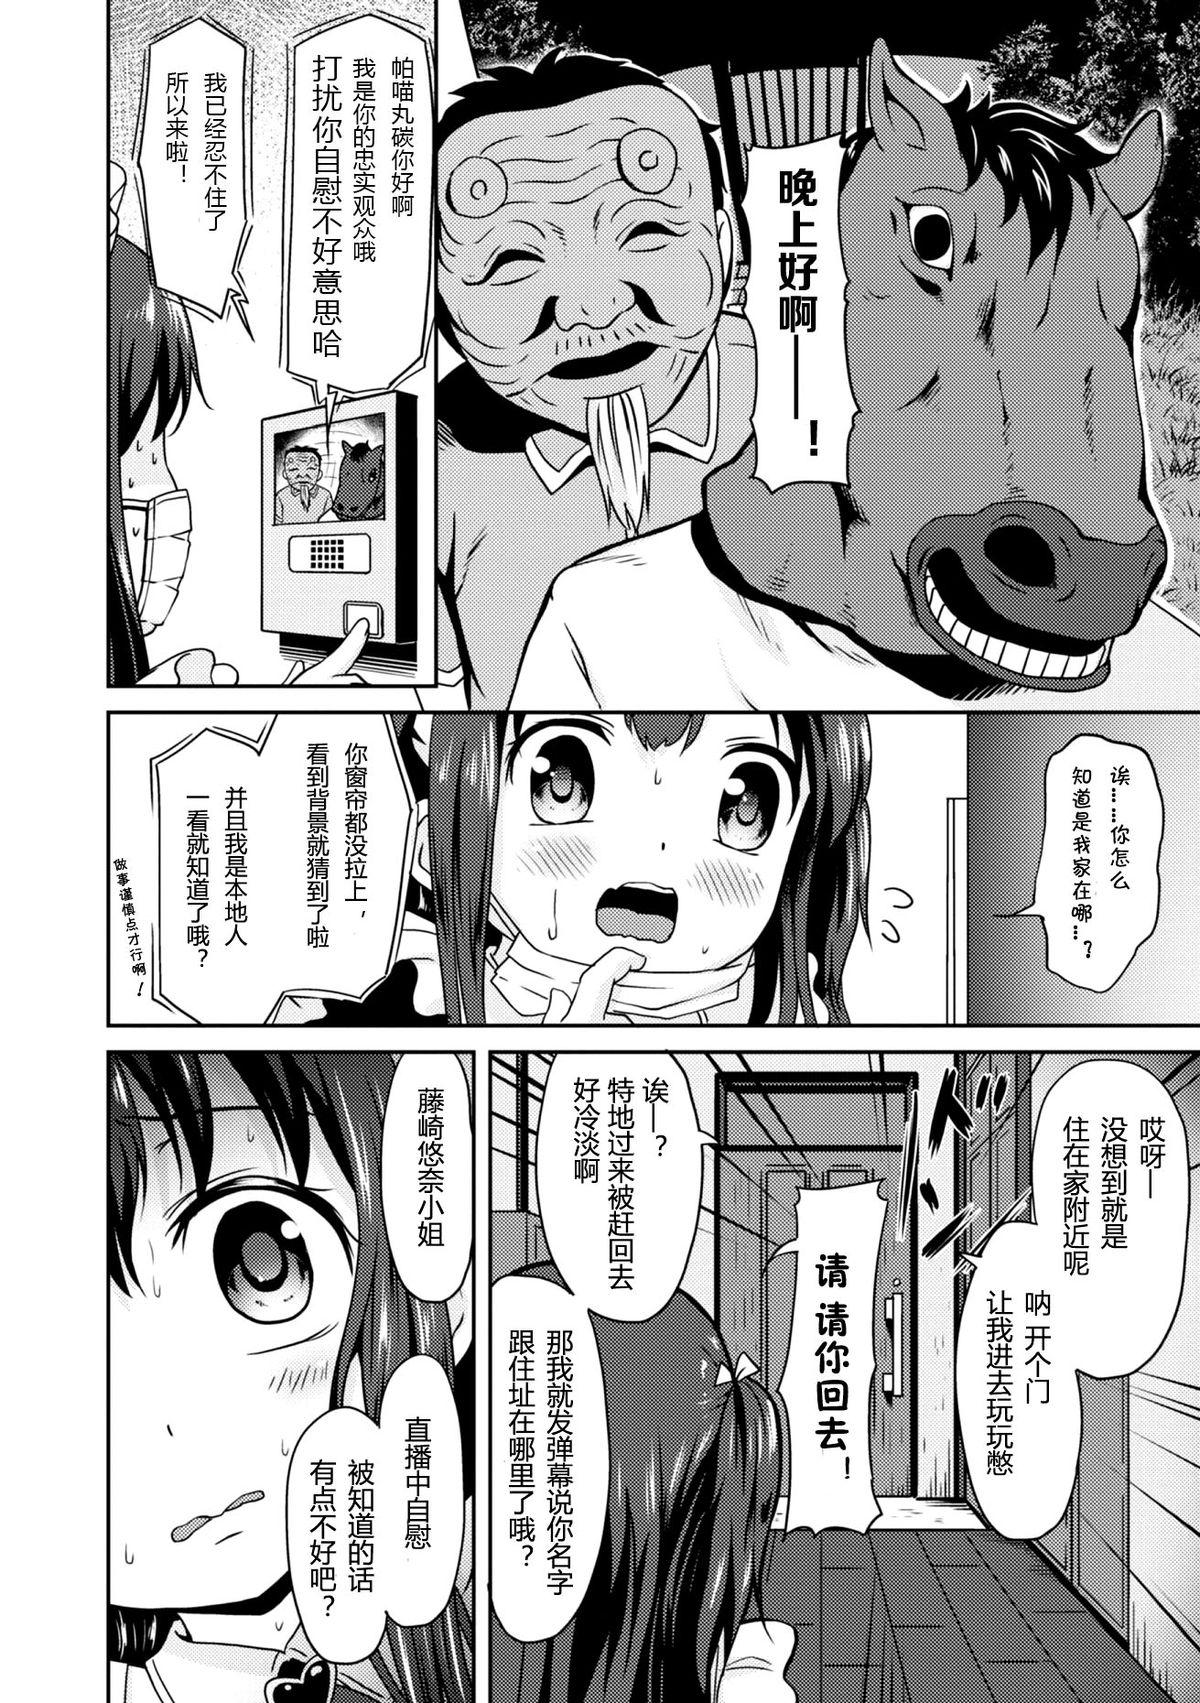 Porno Amateur "Jigoku no" Panyumaru Seihaishin - Maboroshi no Guest Kai "ReaTotsu" Animated - Page 6